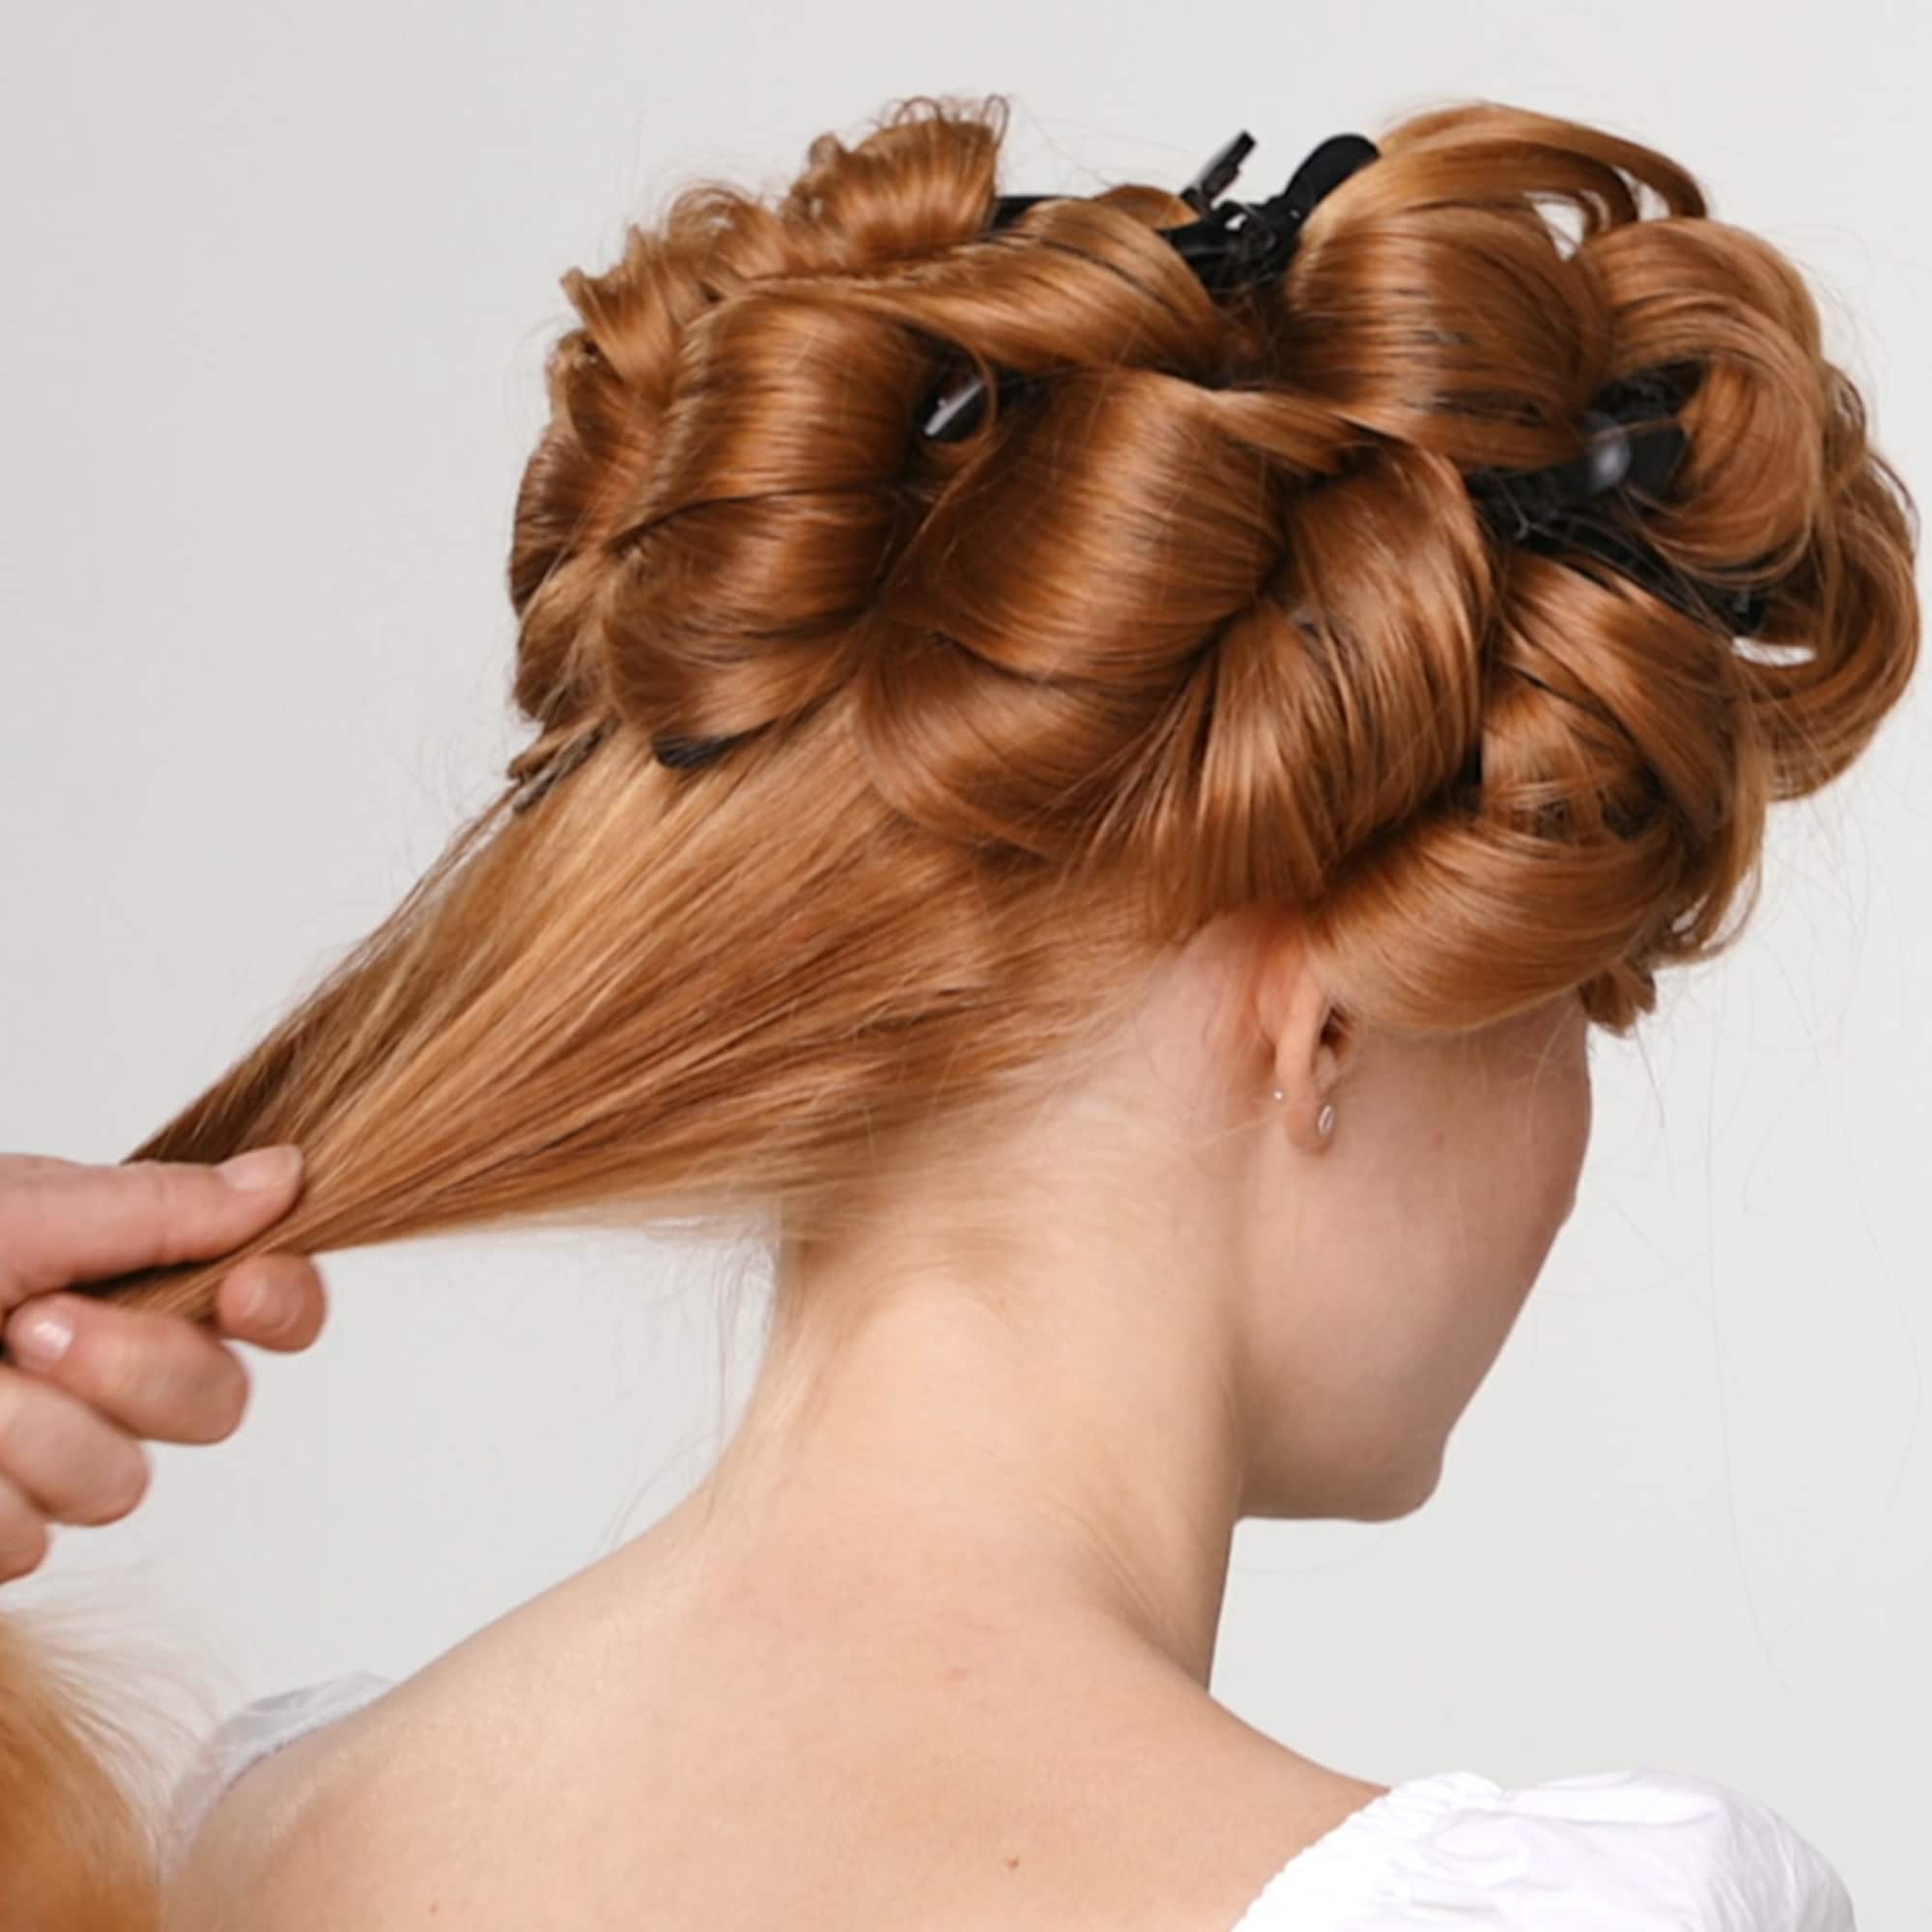 Seksjonering av håret til en kvinne med rødt hår og en hånd som holder en del av det bakre håret 